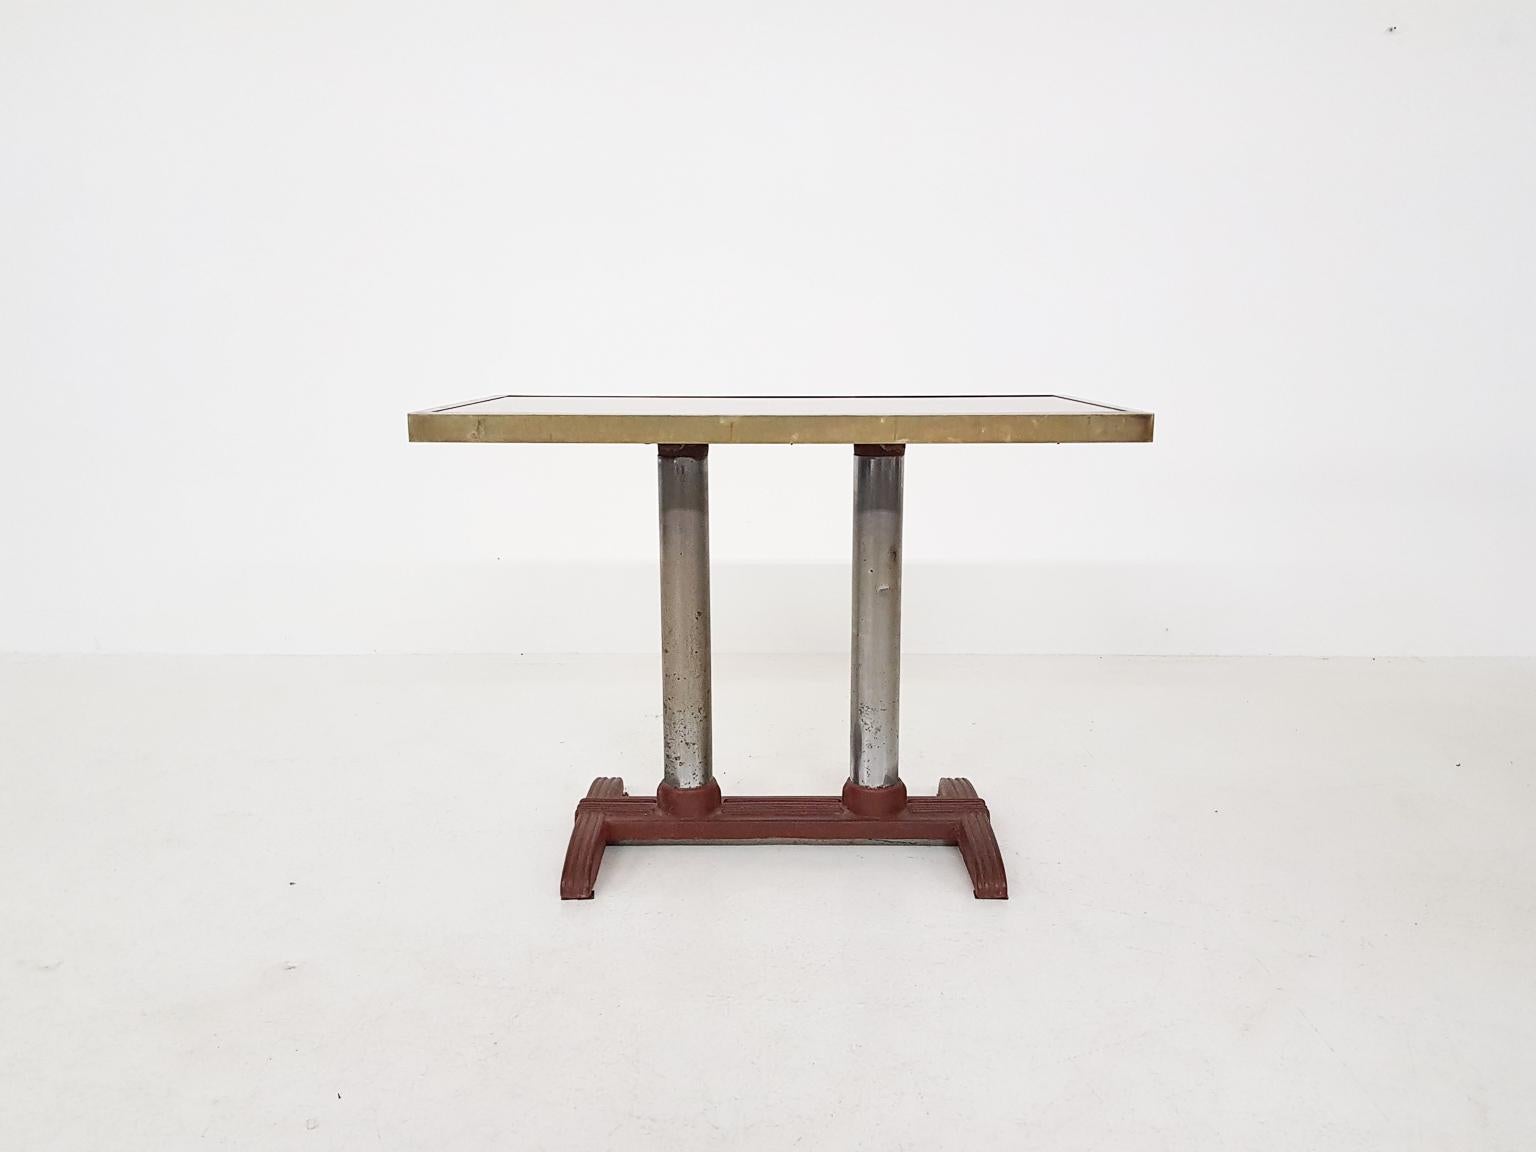 Sehr schwerer Tisch, der als Beistell-, Konsolen- oder Gartentisch verwendet werden kann. Sie können aber auch einen Stuhl davor stellen, um ihn als kleinen Schreibtisch zu benutzen. Hergestellt zwischen 1900 und 1930.

Dieser Tisch stand in einem